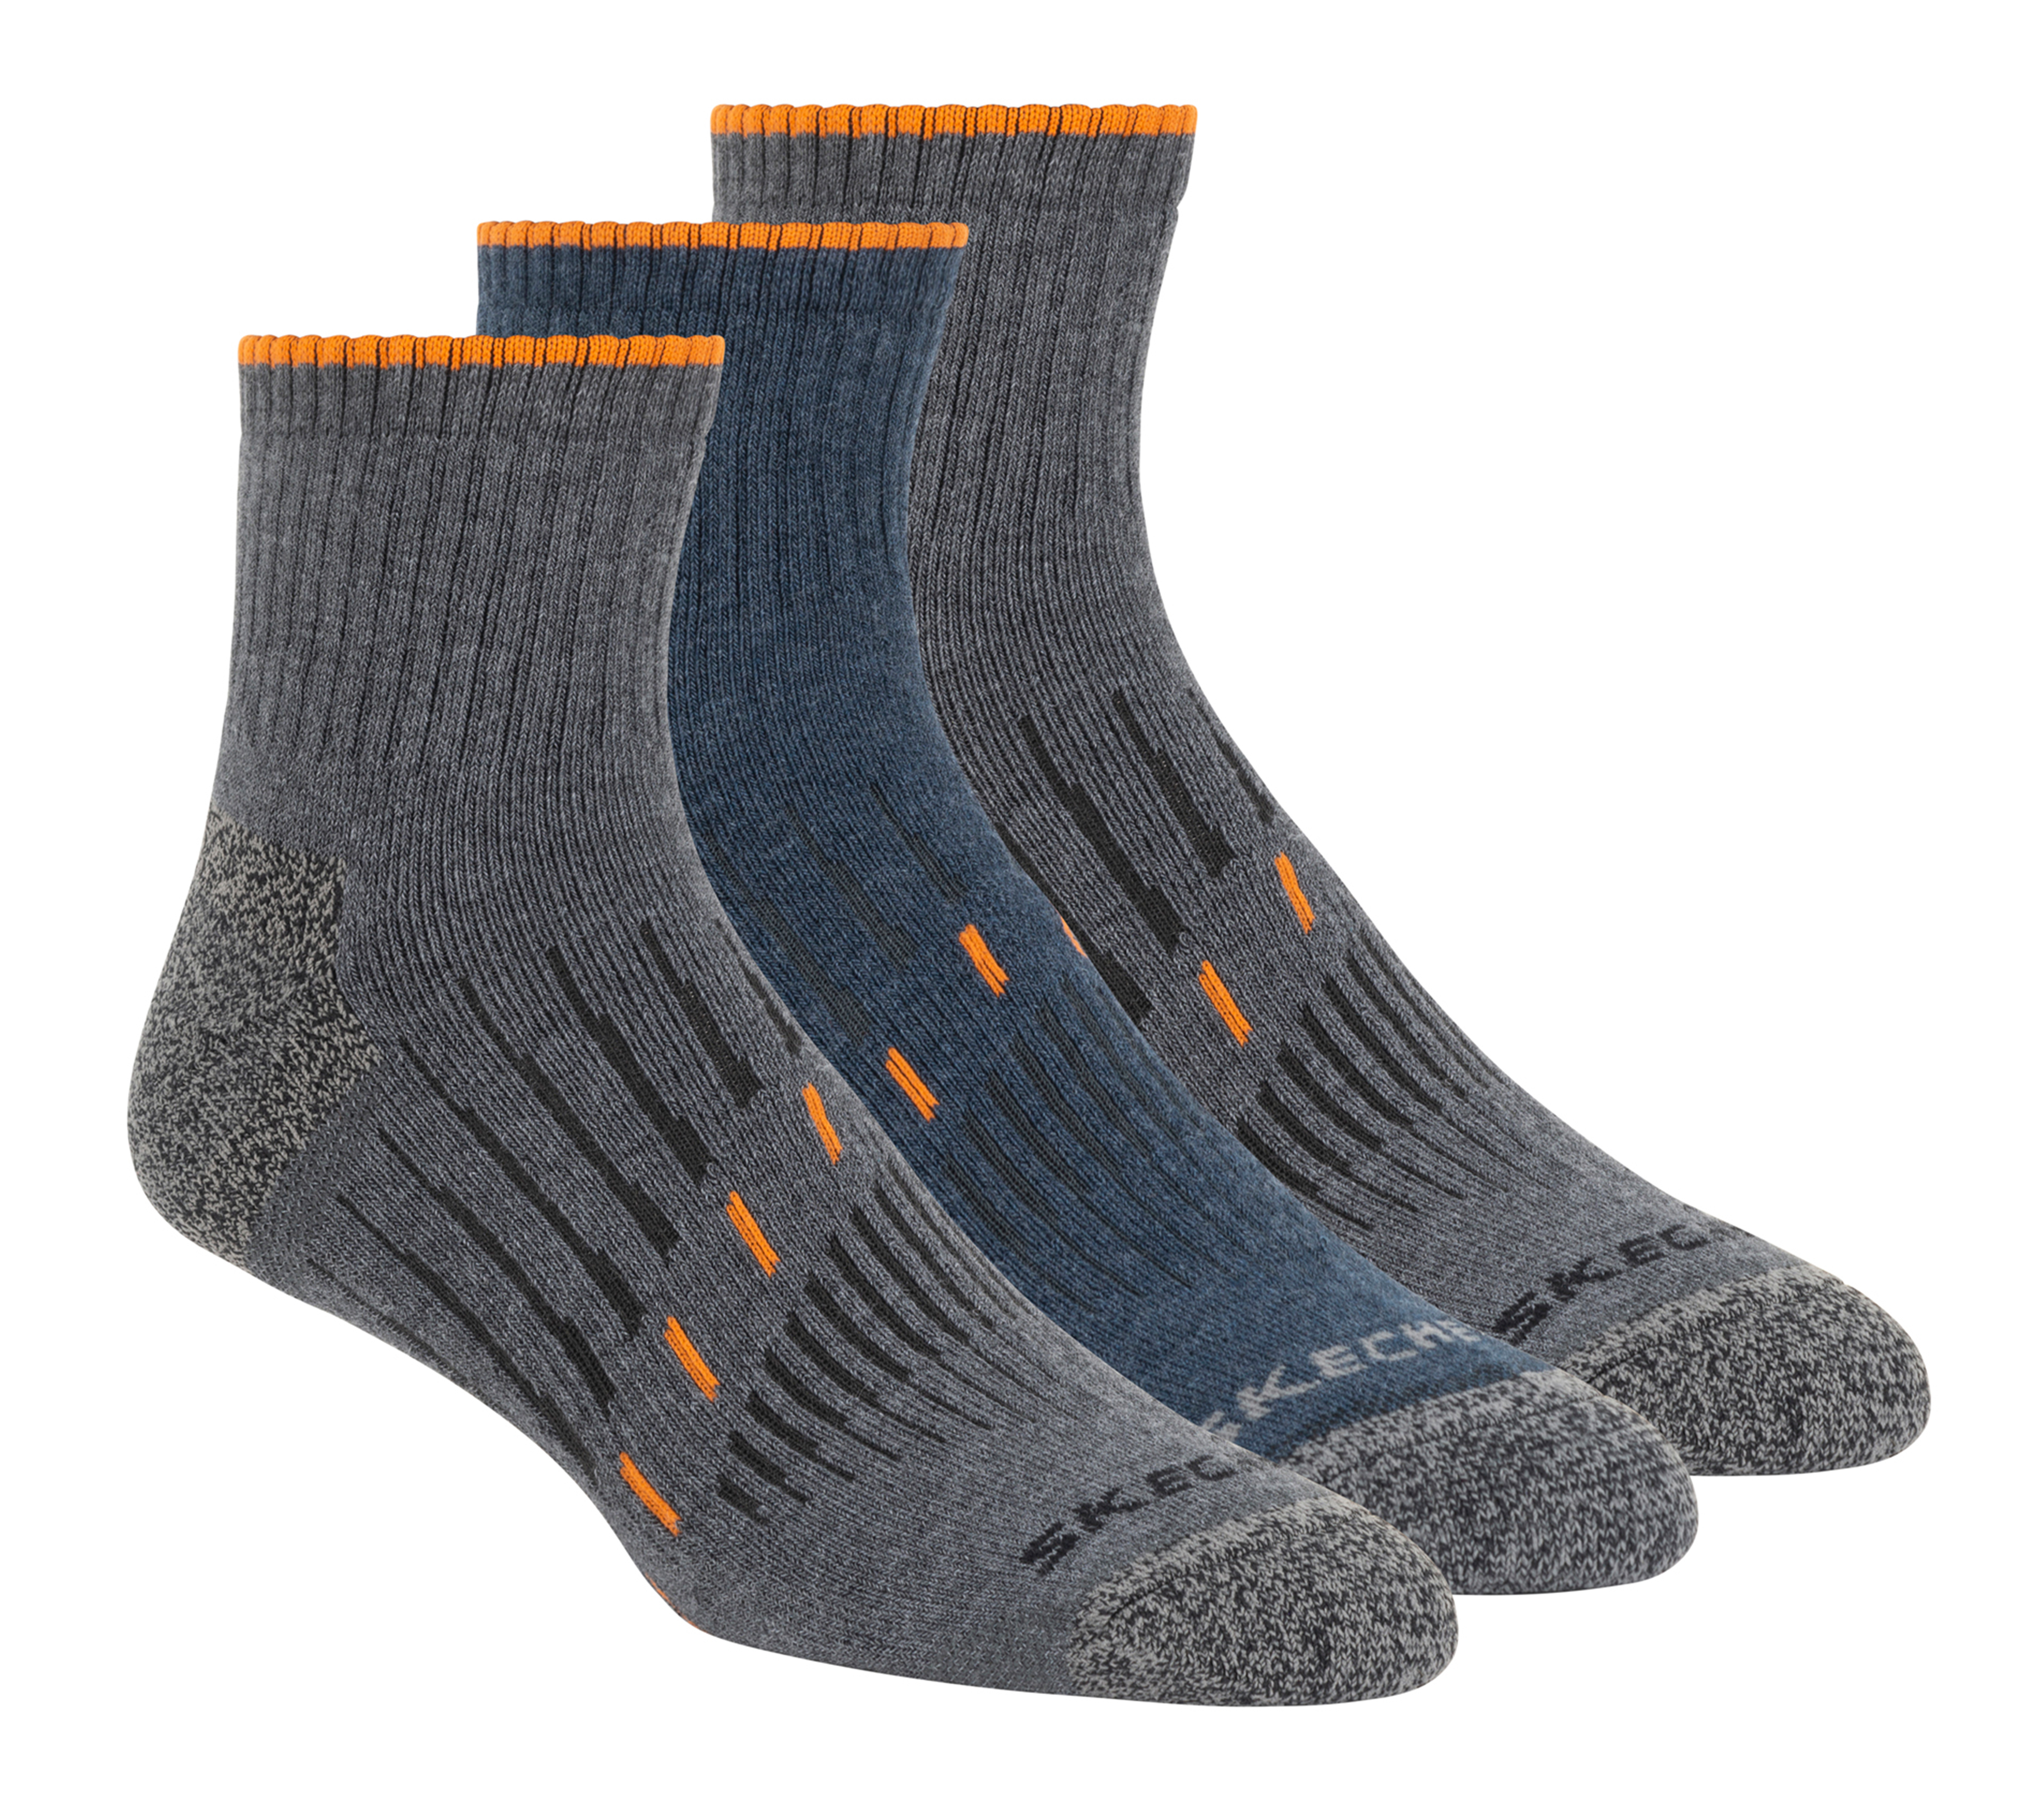 Visiter la boutique SkechersSkechers 3 pair Unisex Quarter socks SK42017 